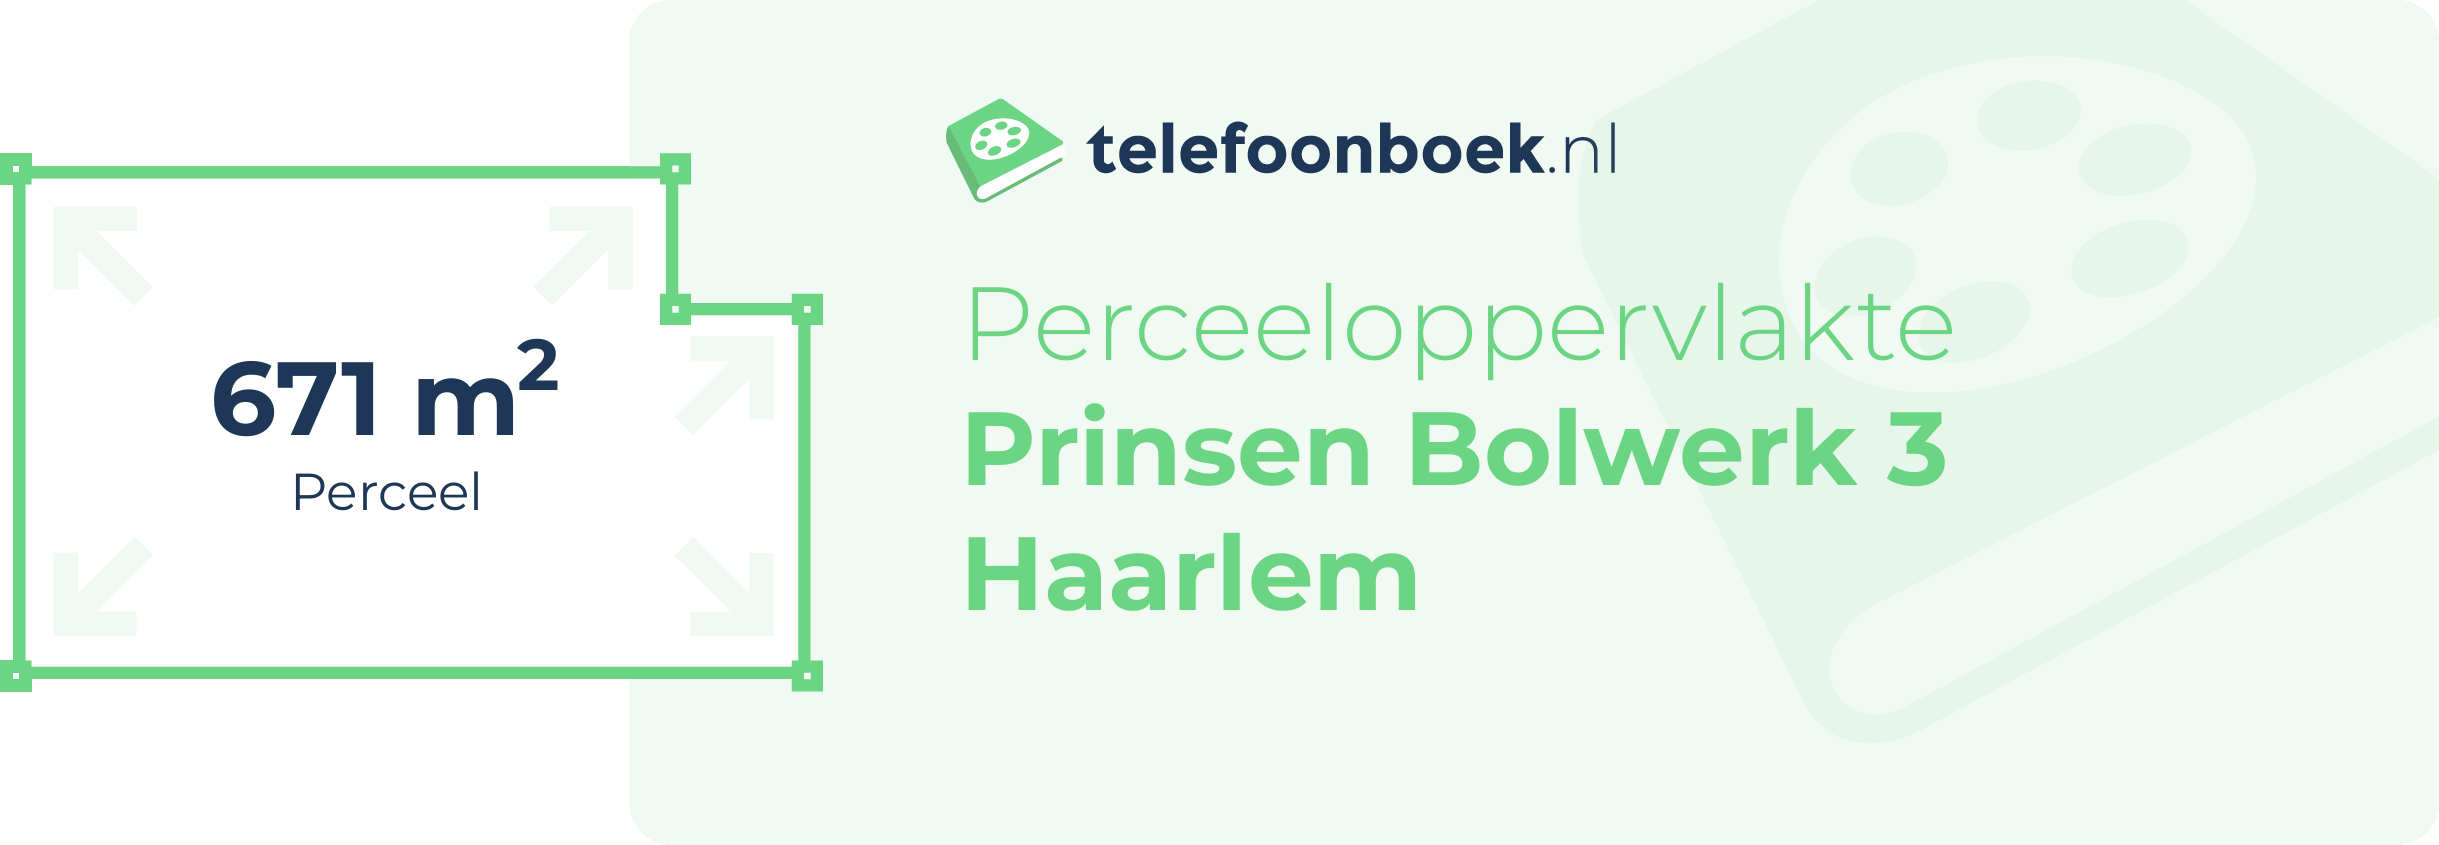 Perceeloppervlakte Prinsen Bolwerk 3 Haarlem